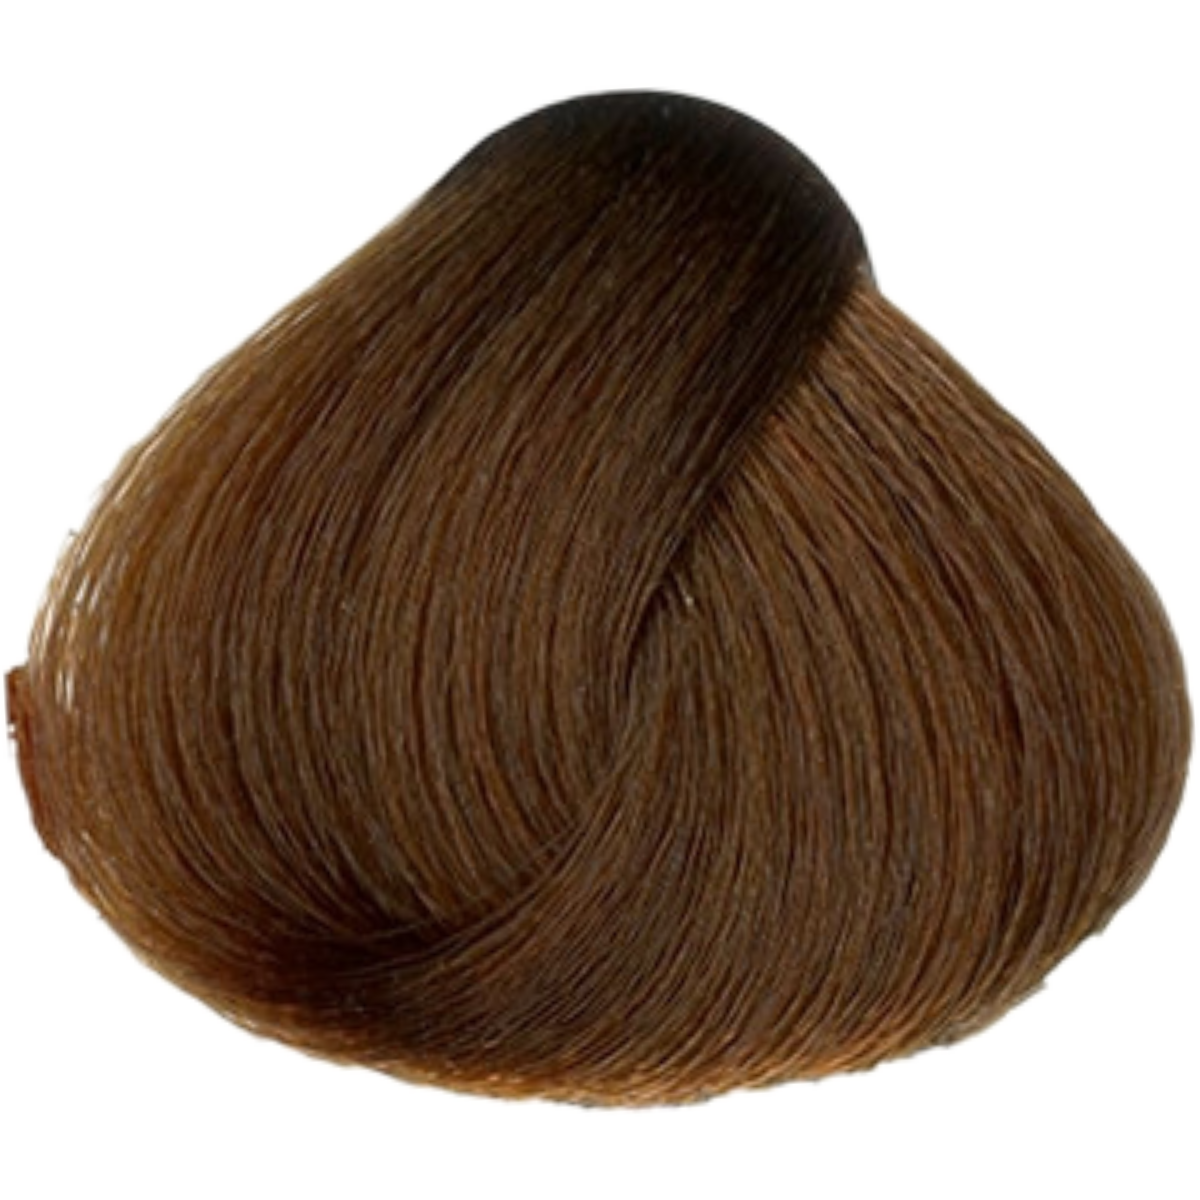 צבע שיער 7.45 COPPER MAHOGANY BLONDE פארמויטה FarmaVita צבע לשיער 60 גרם